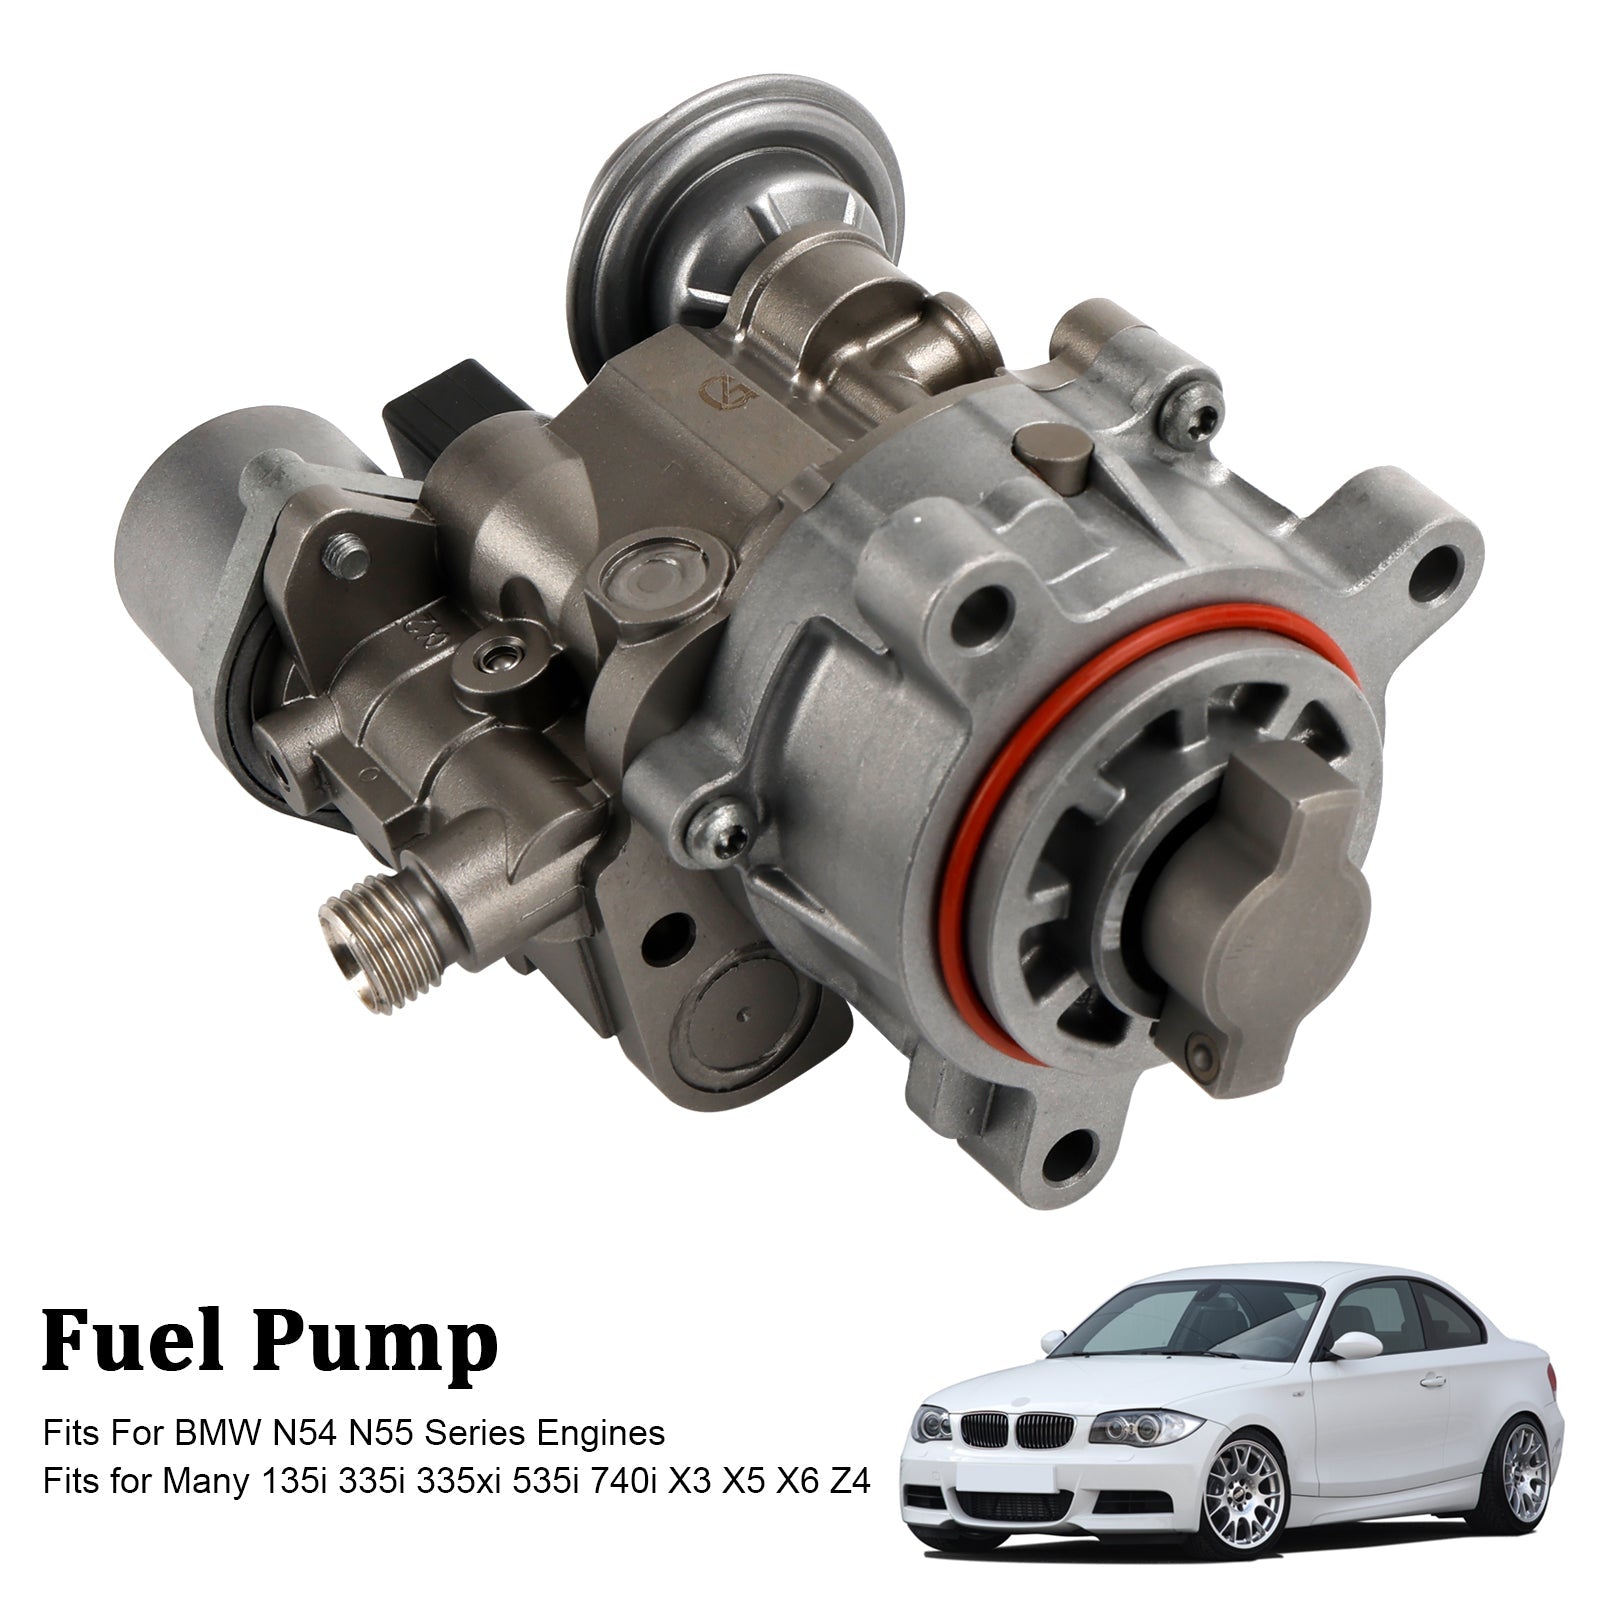 Pompa carburante ad alta pressione BMW 335i 535i xDrive 2009-2012 13406014001 13517594943 13517613933 13517616170